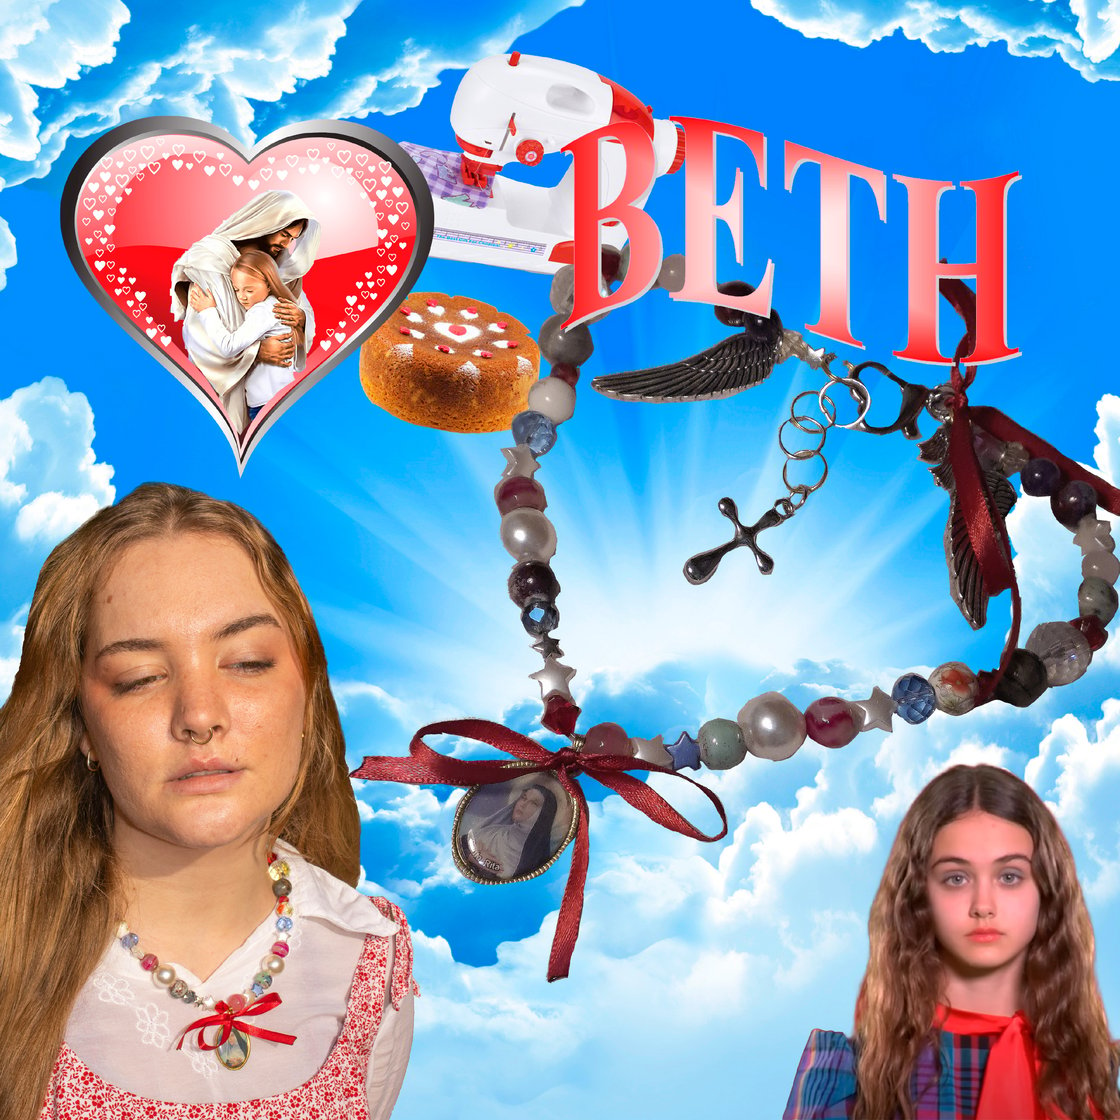 Image of Collar Beth